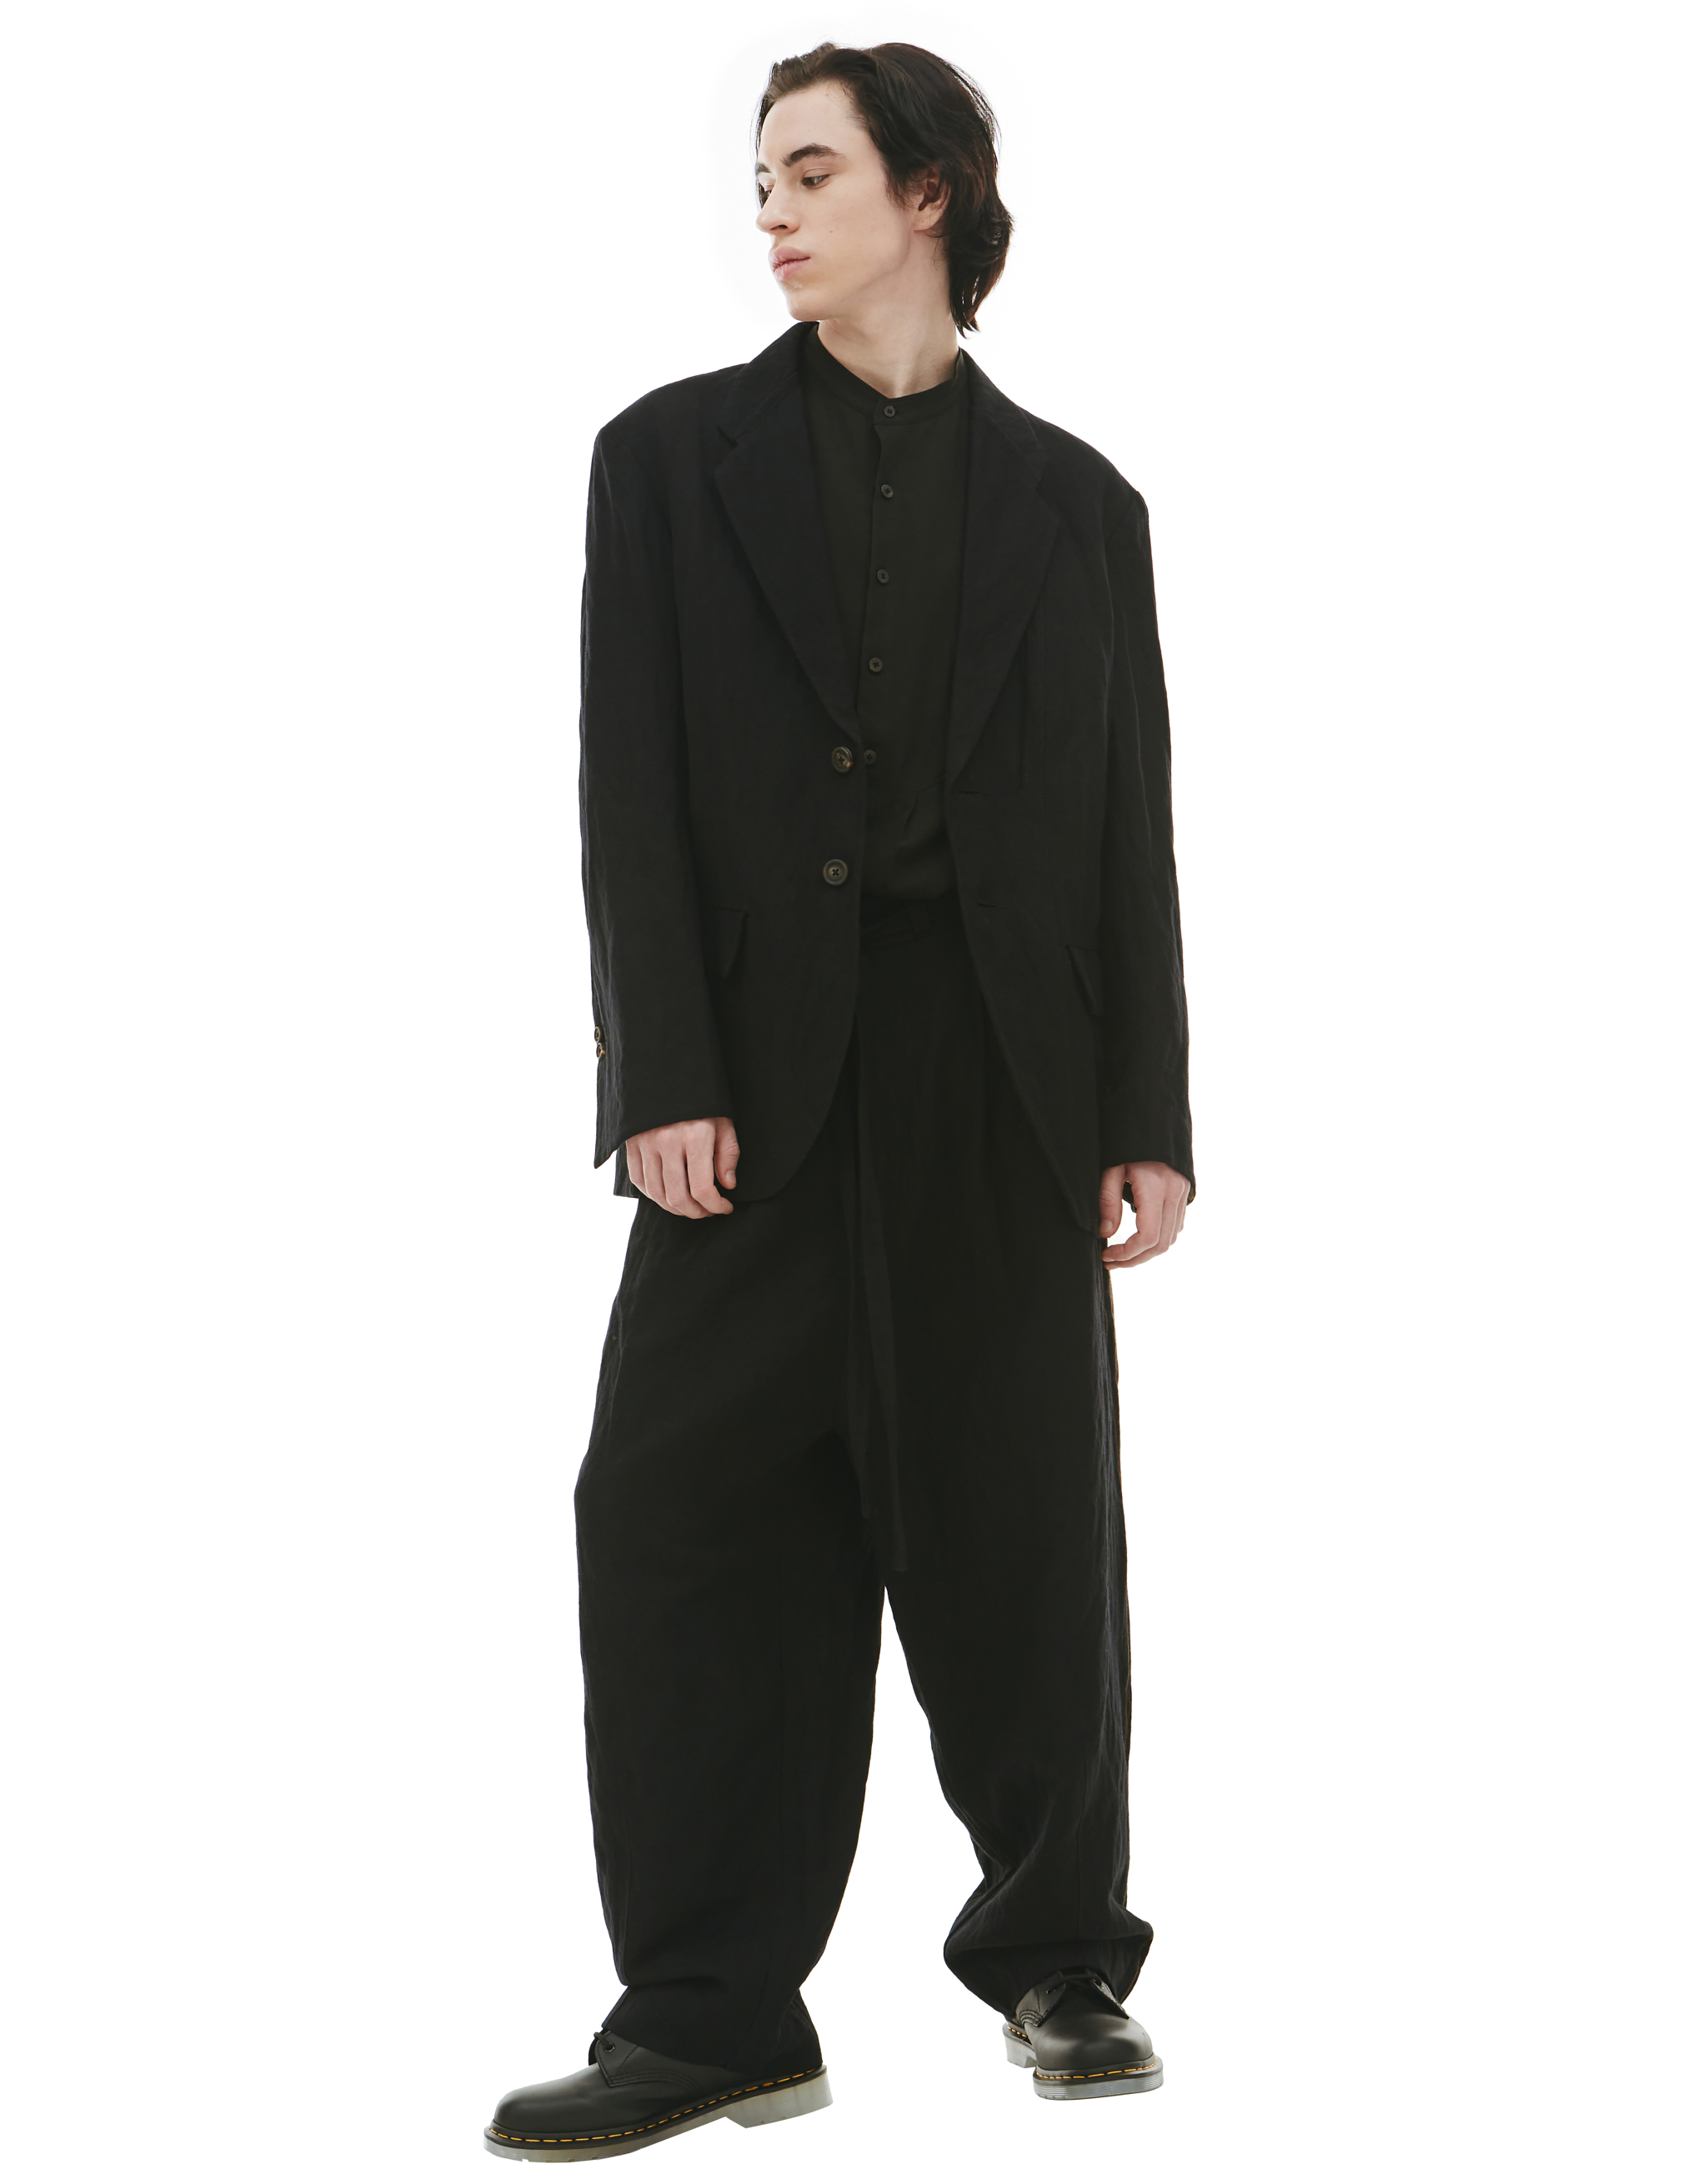 Льняной пиджак с контрастной полоской Ziggy Chen 0M2230905, размер 52;50;48